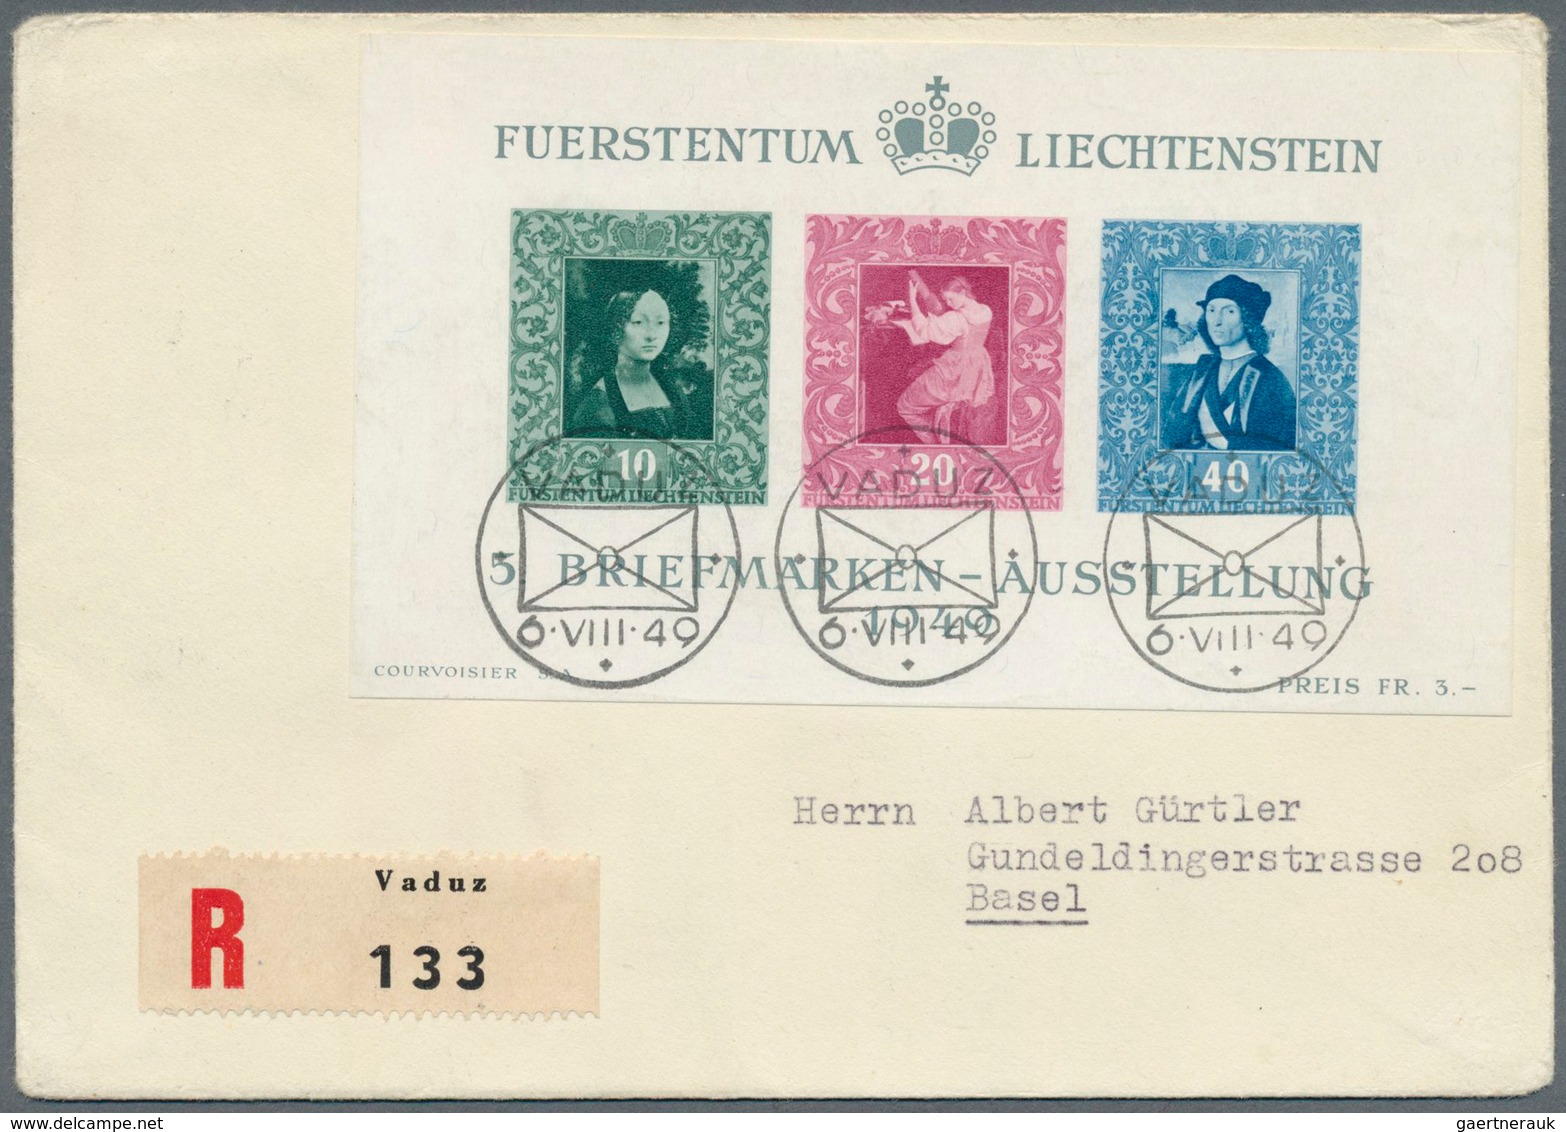 27177 Liechtenstein: 1900/1970 (ca.), vielseitige Partie von ca. 290 Briefen/Karten/Ganzsachen/FDCs/Maximu